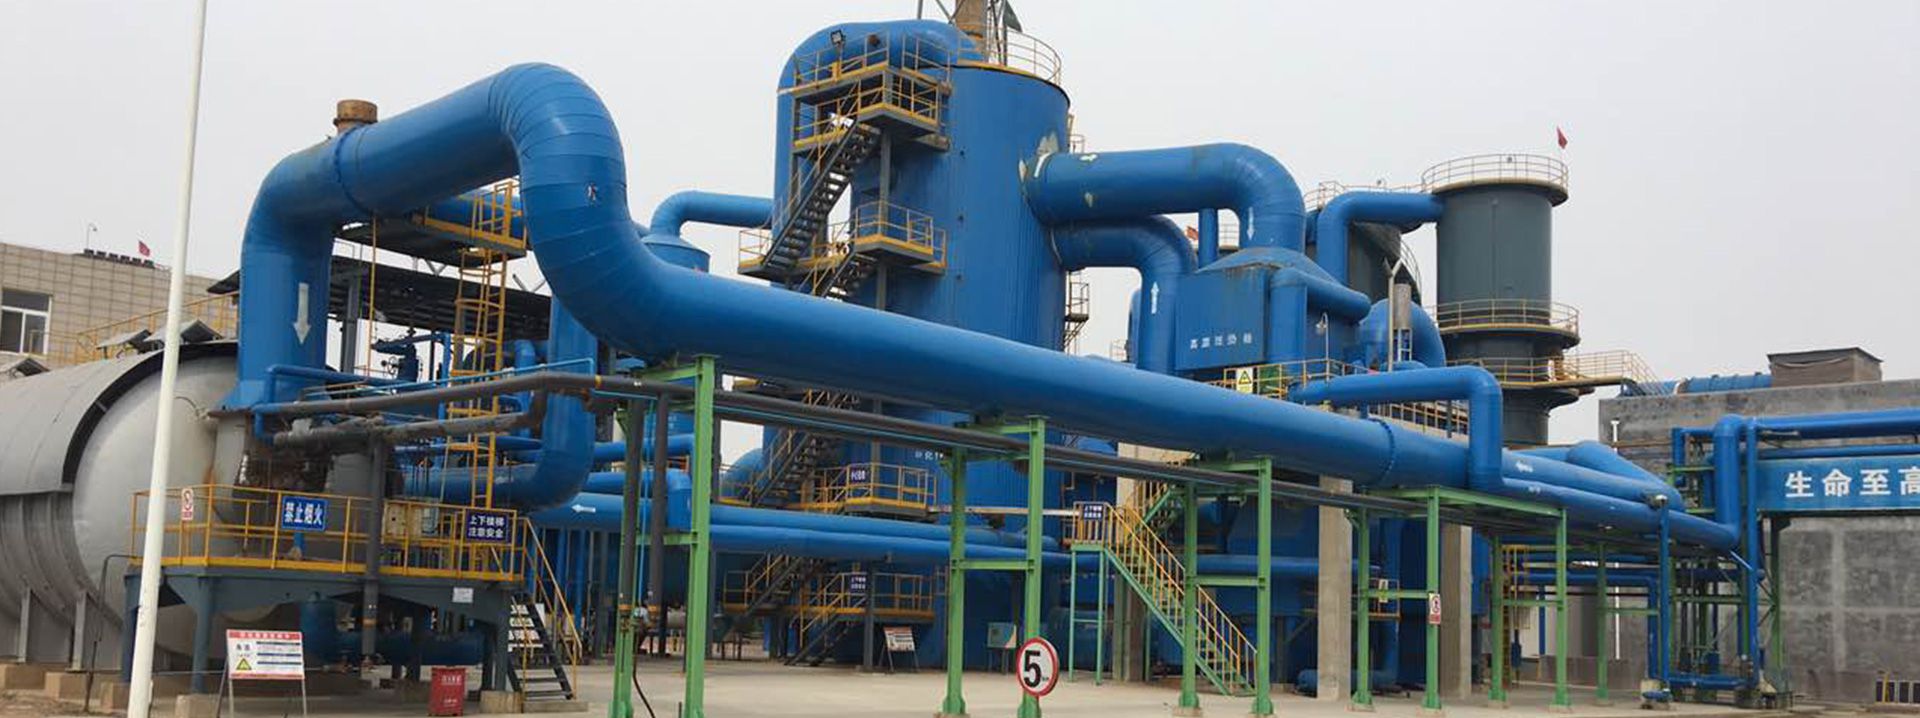 Chengdu Taiyu Industrial Gases Co., Ltd.